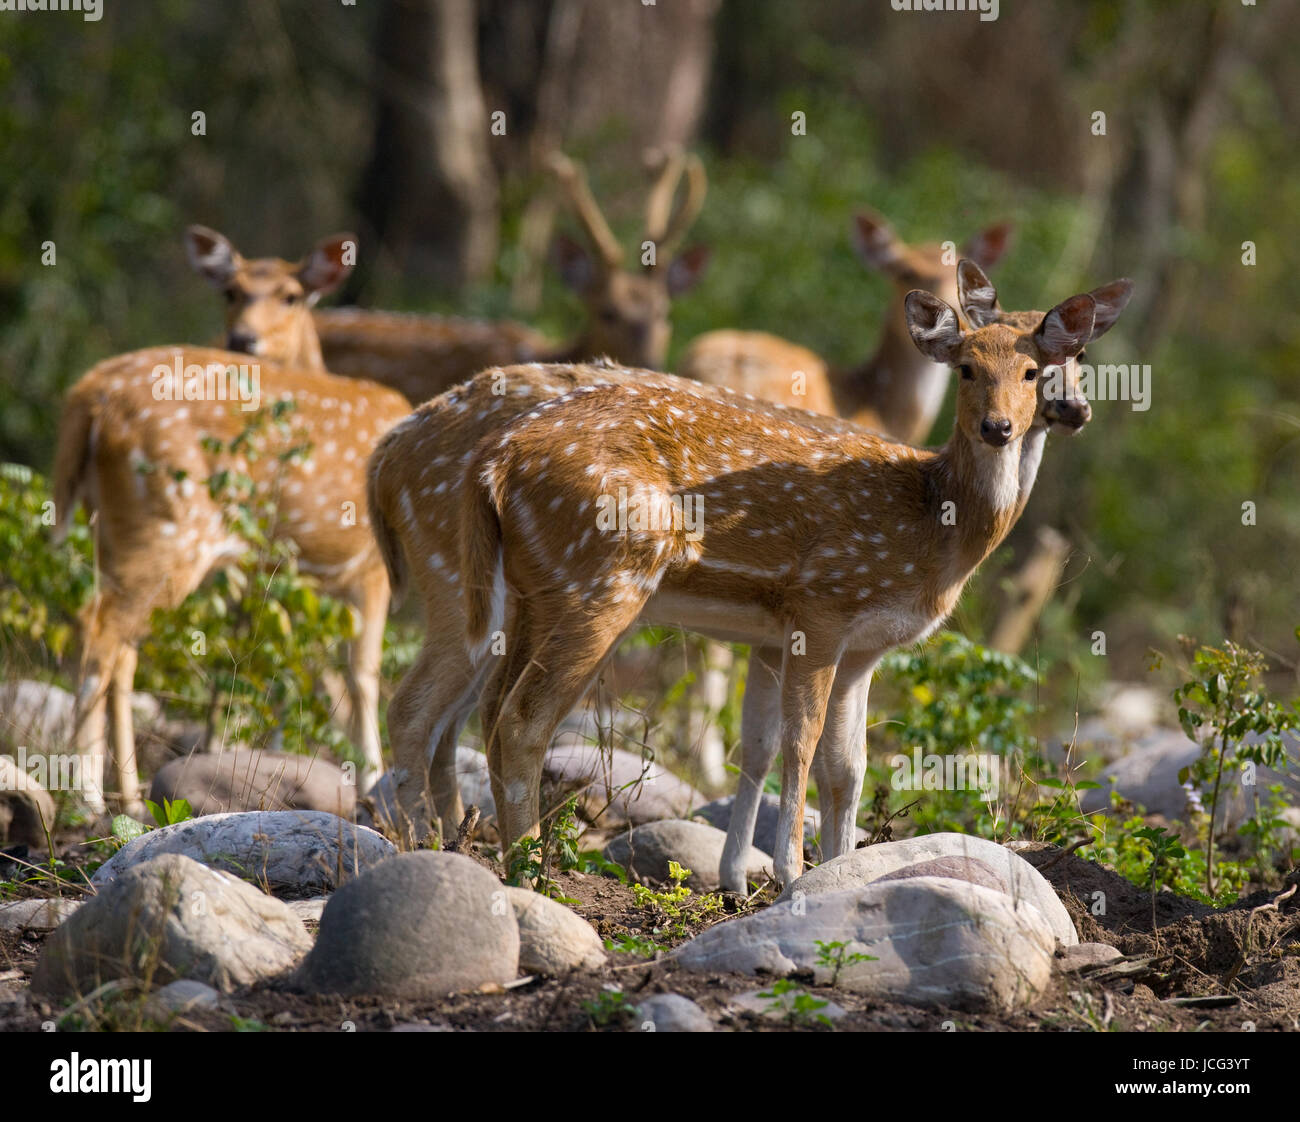 Eine Gruppe von Hirschen steht im Dschungel in freier Wildbahn. Indien. Nationalpark. Stockfoto